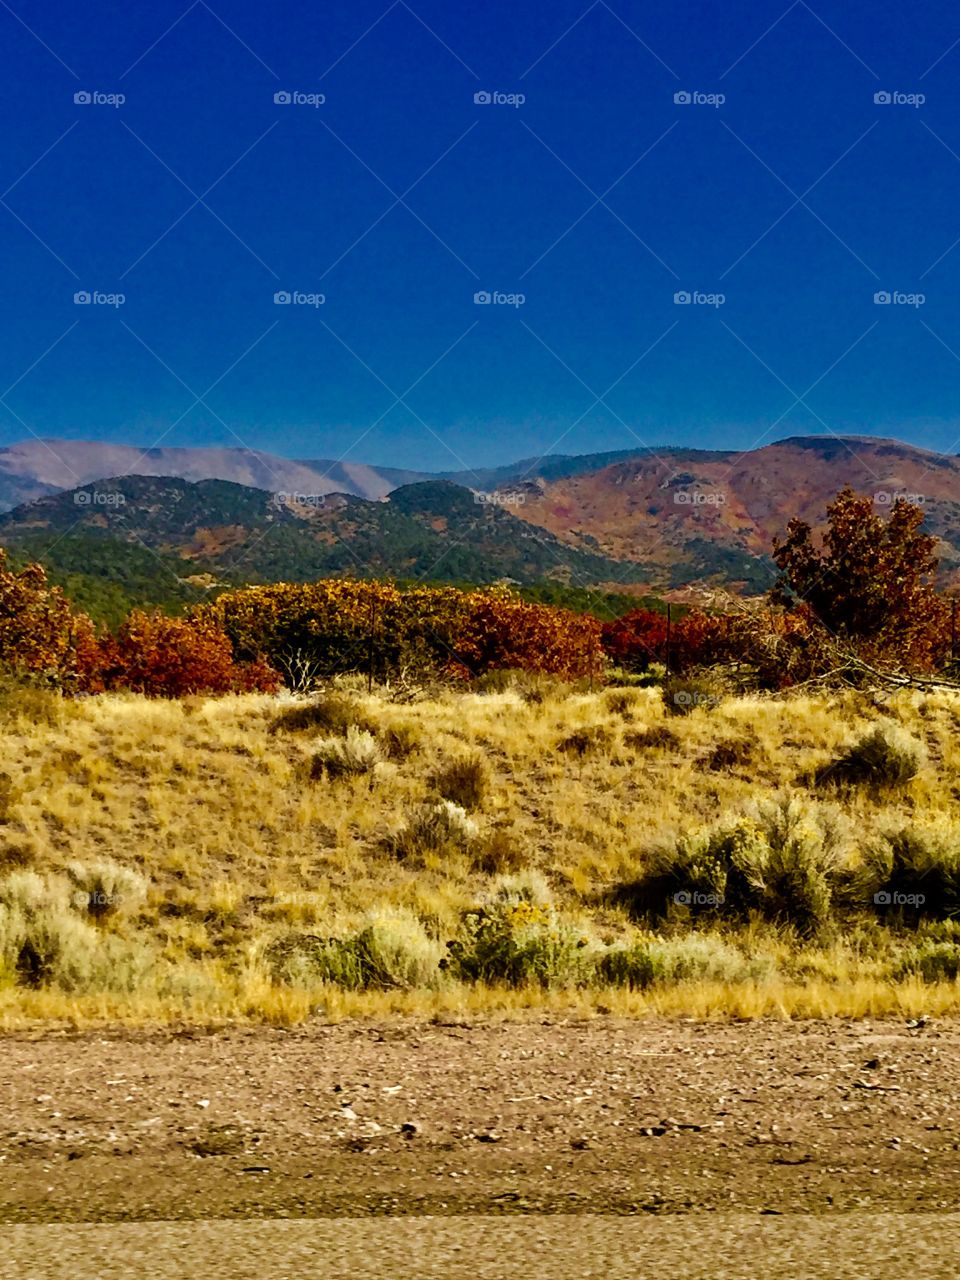 Fall mountains 